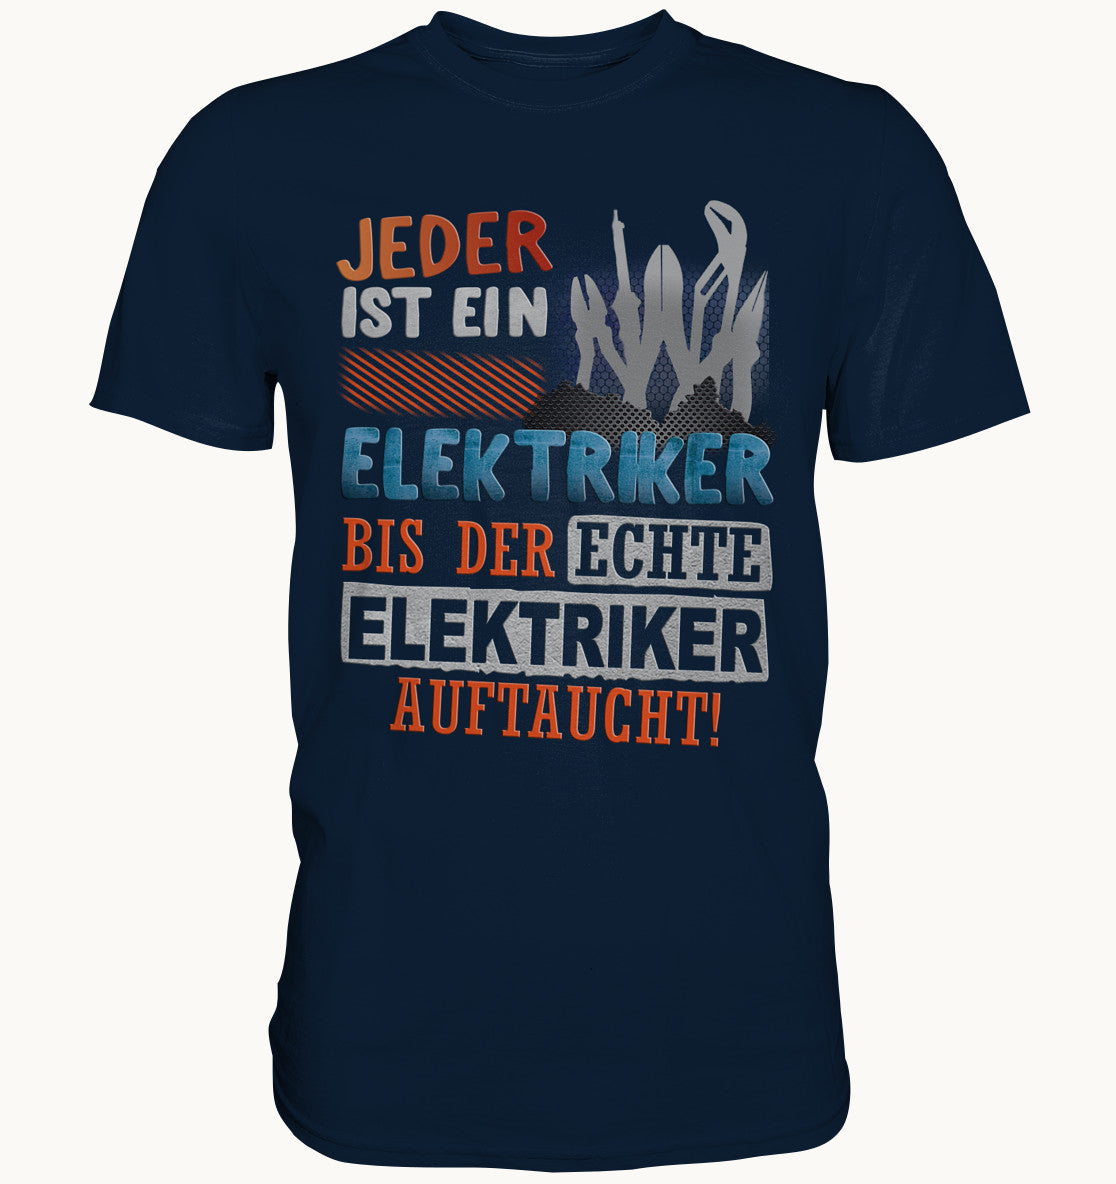 Jeder ist ein Elektriker, bis der echte Elektriker auftaucht - Handwerker Sprüche Shirt